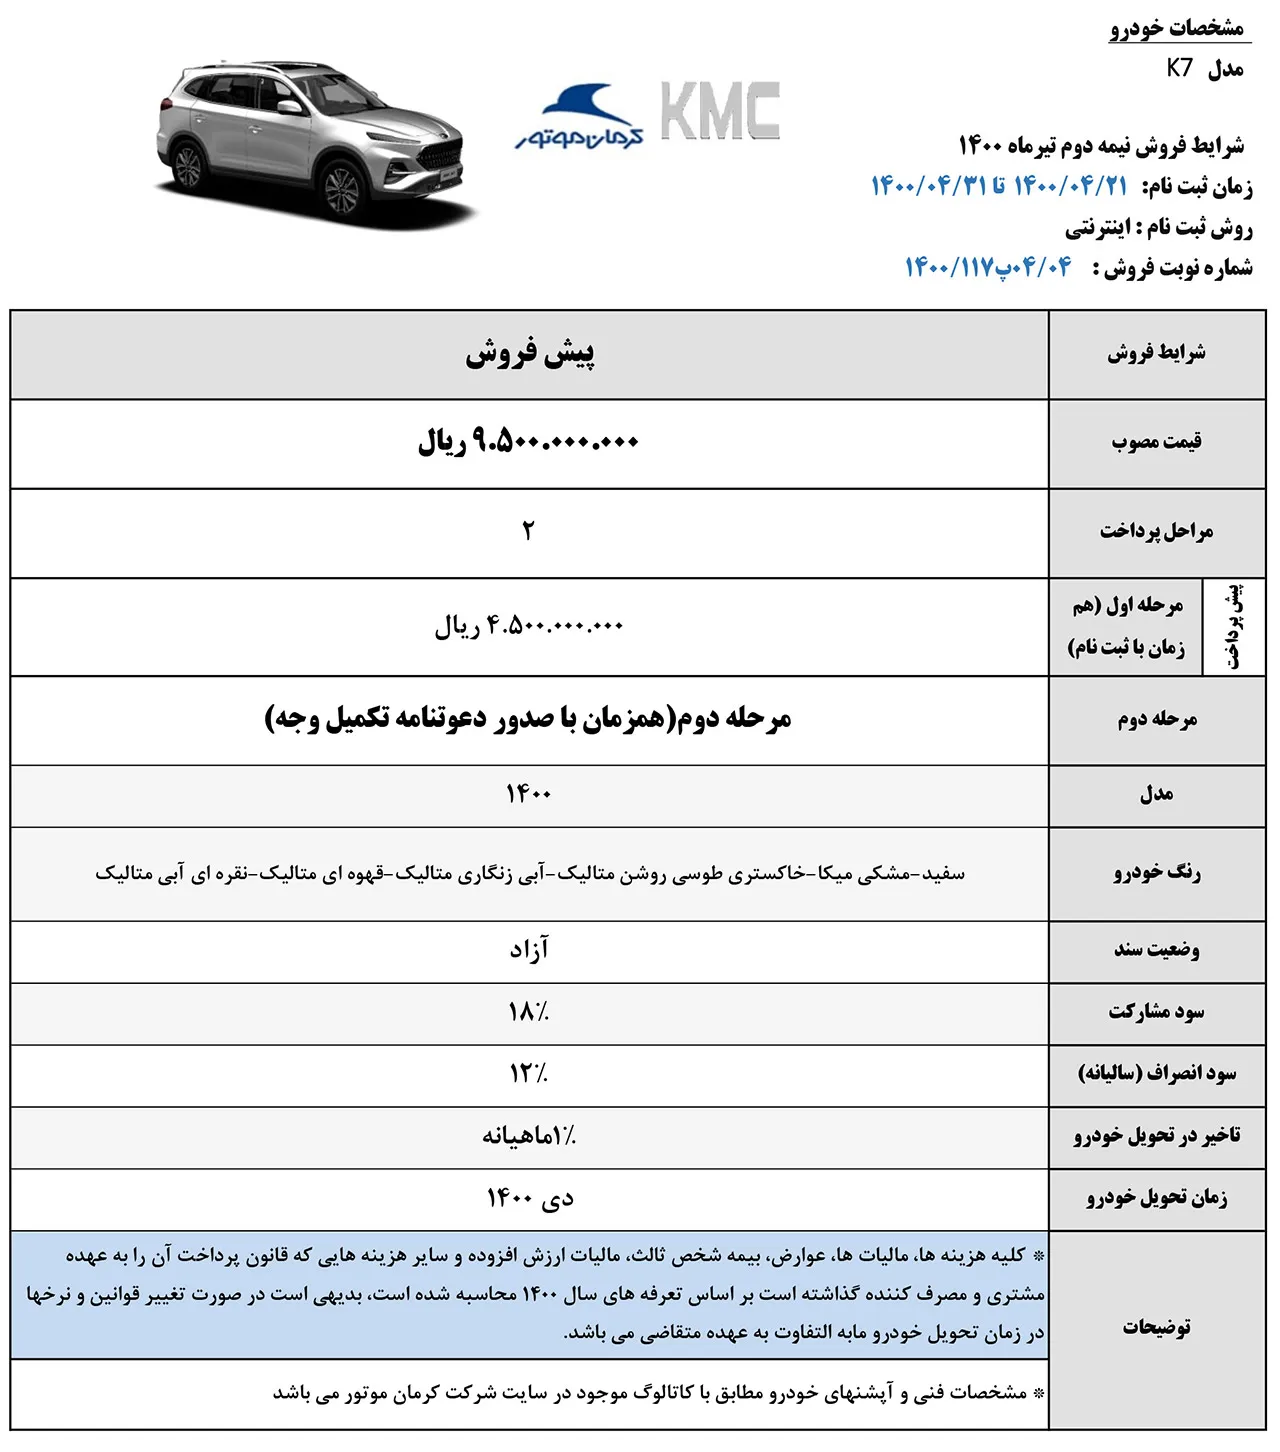 AutomobileFa KMC K7 Sale Plan 20tir1400